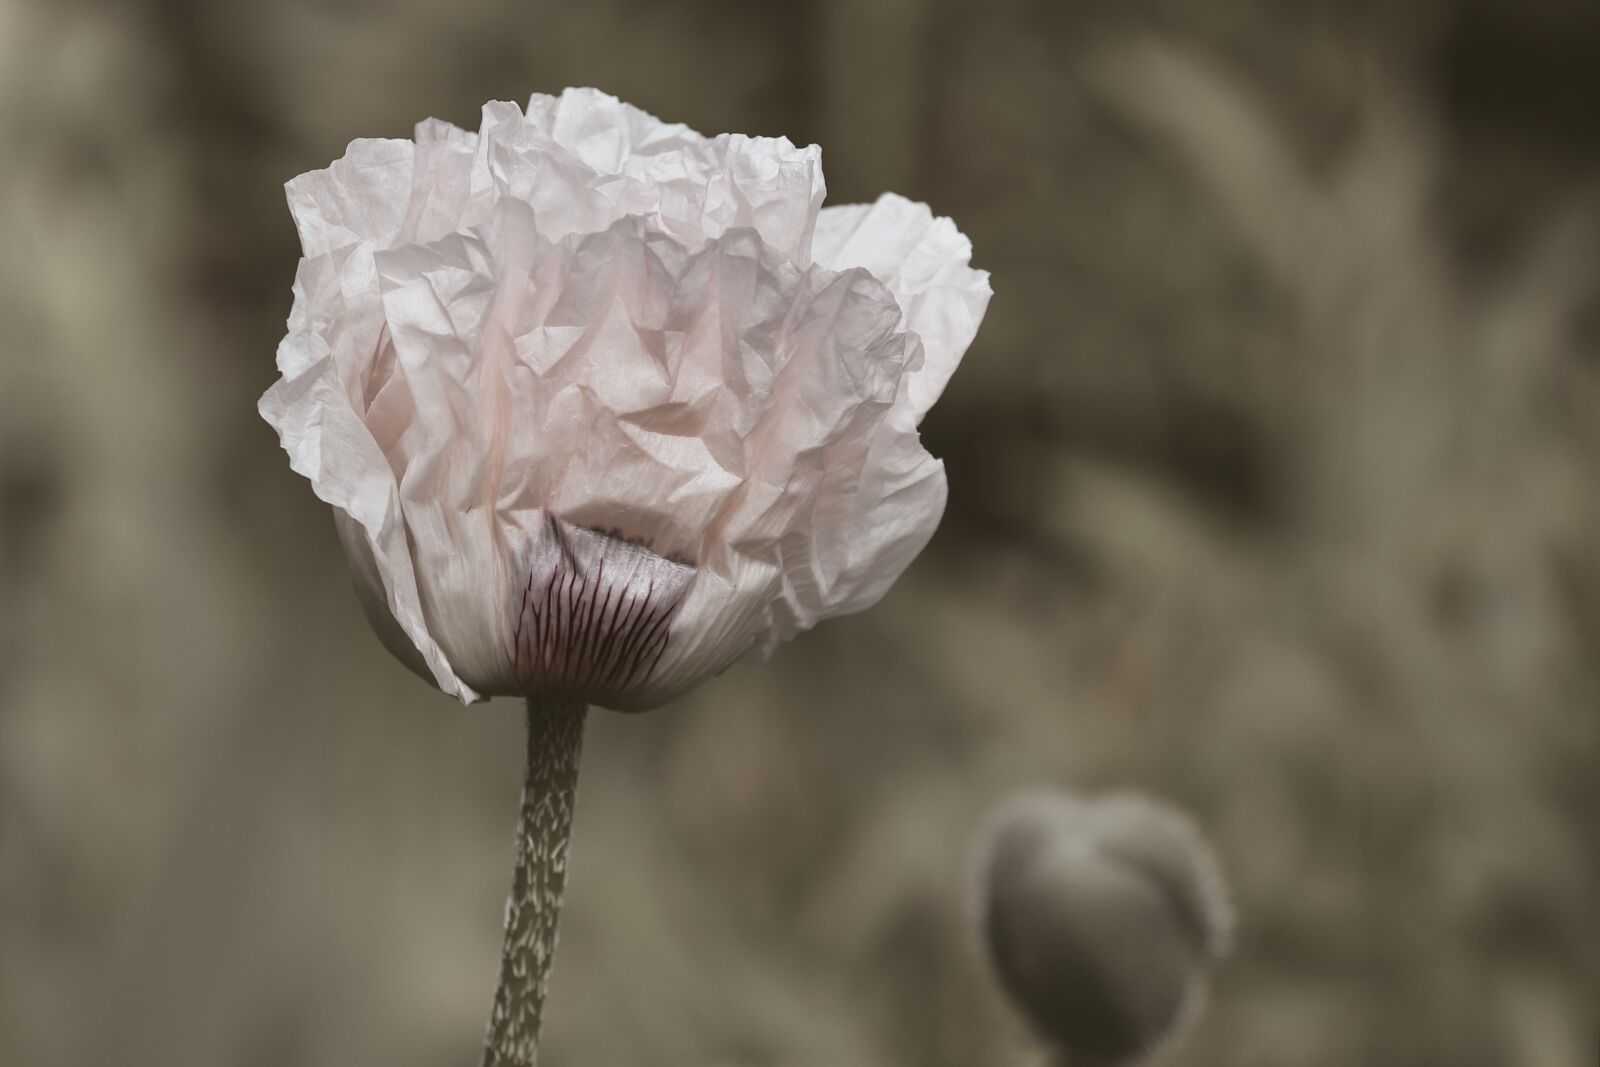 Canon EOS 200D (EOS Rebel SL2 / EOS Kiss X9) sample photo. Poppy flower, white, white photography